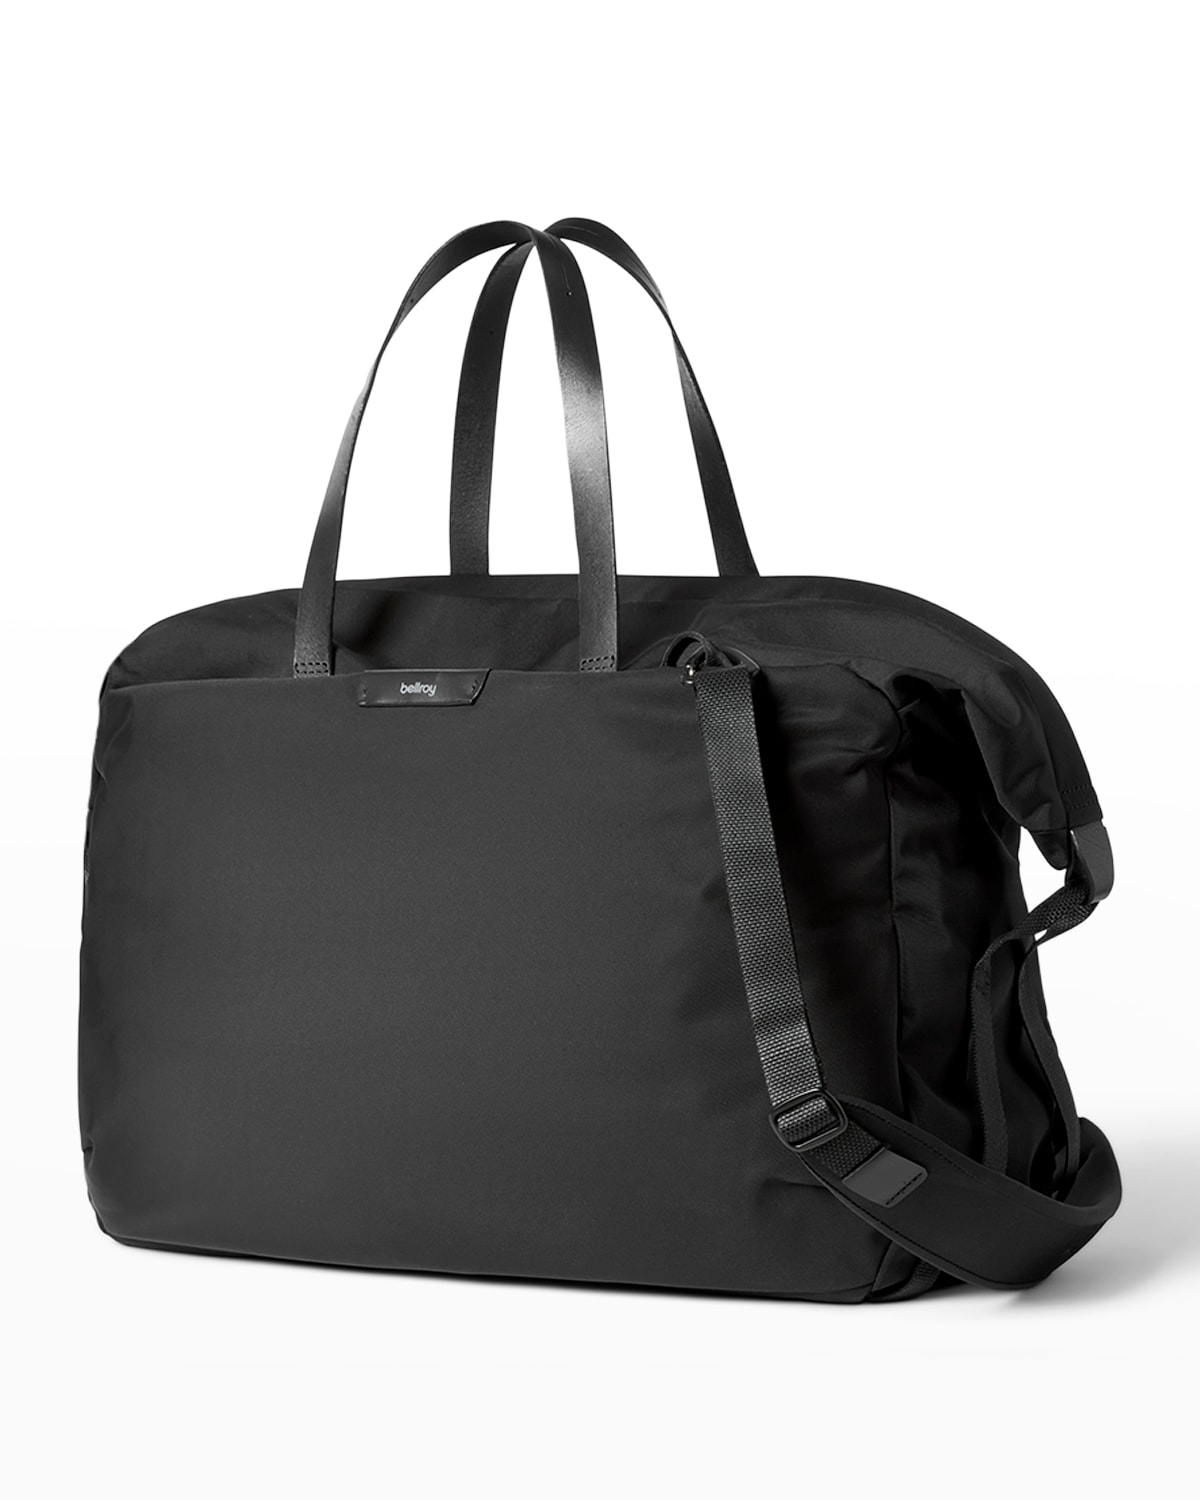 Bellroy Men's Weekender Plus Water-Resistant Duffel Bag